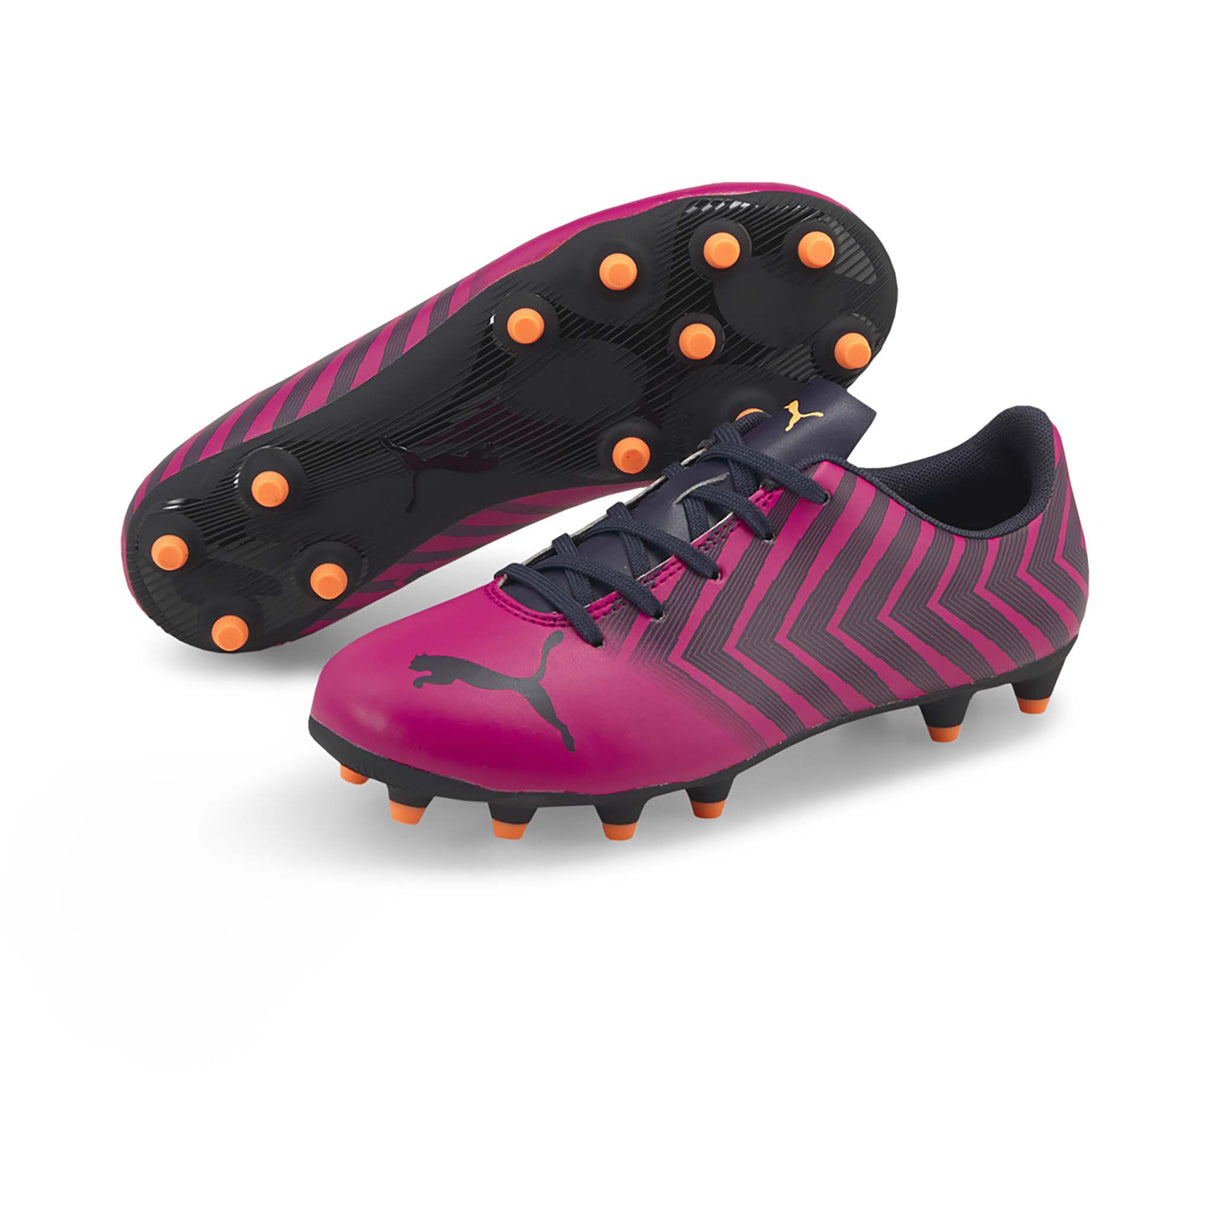 Puma Tacto II FG/AG Junior souliers soccer crampons rose noir enfant paire